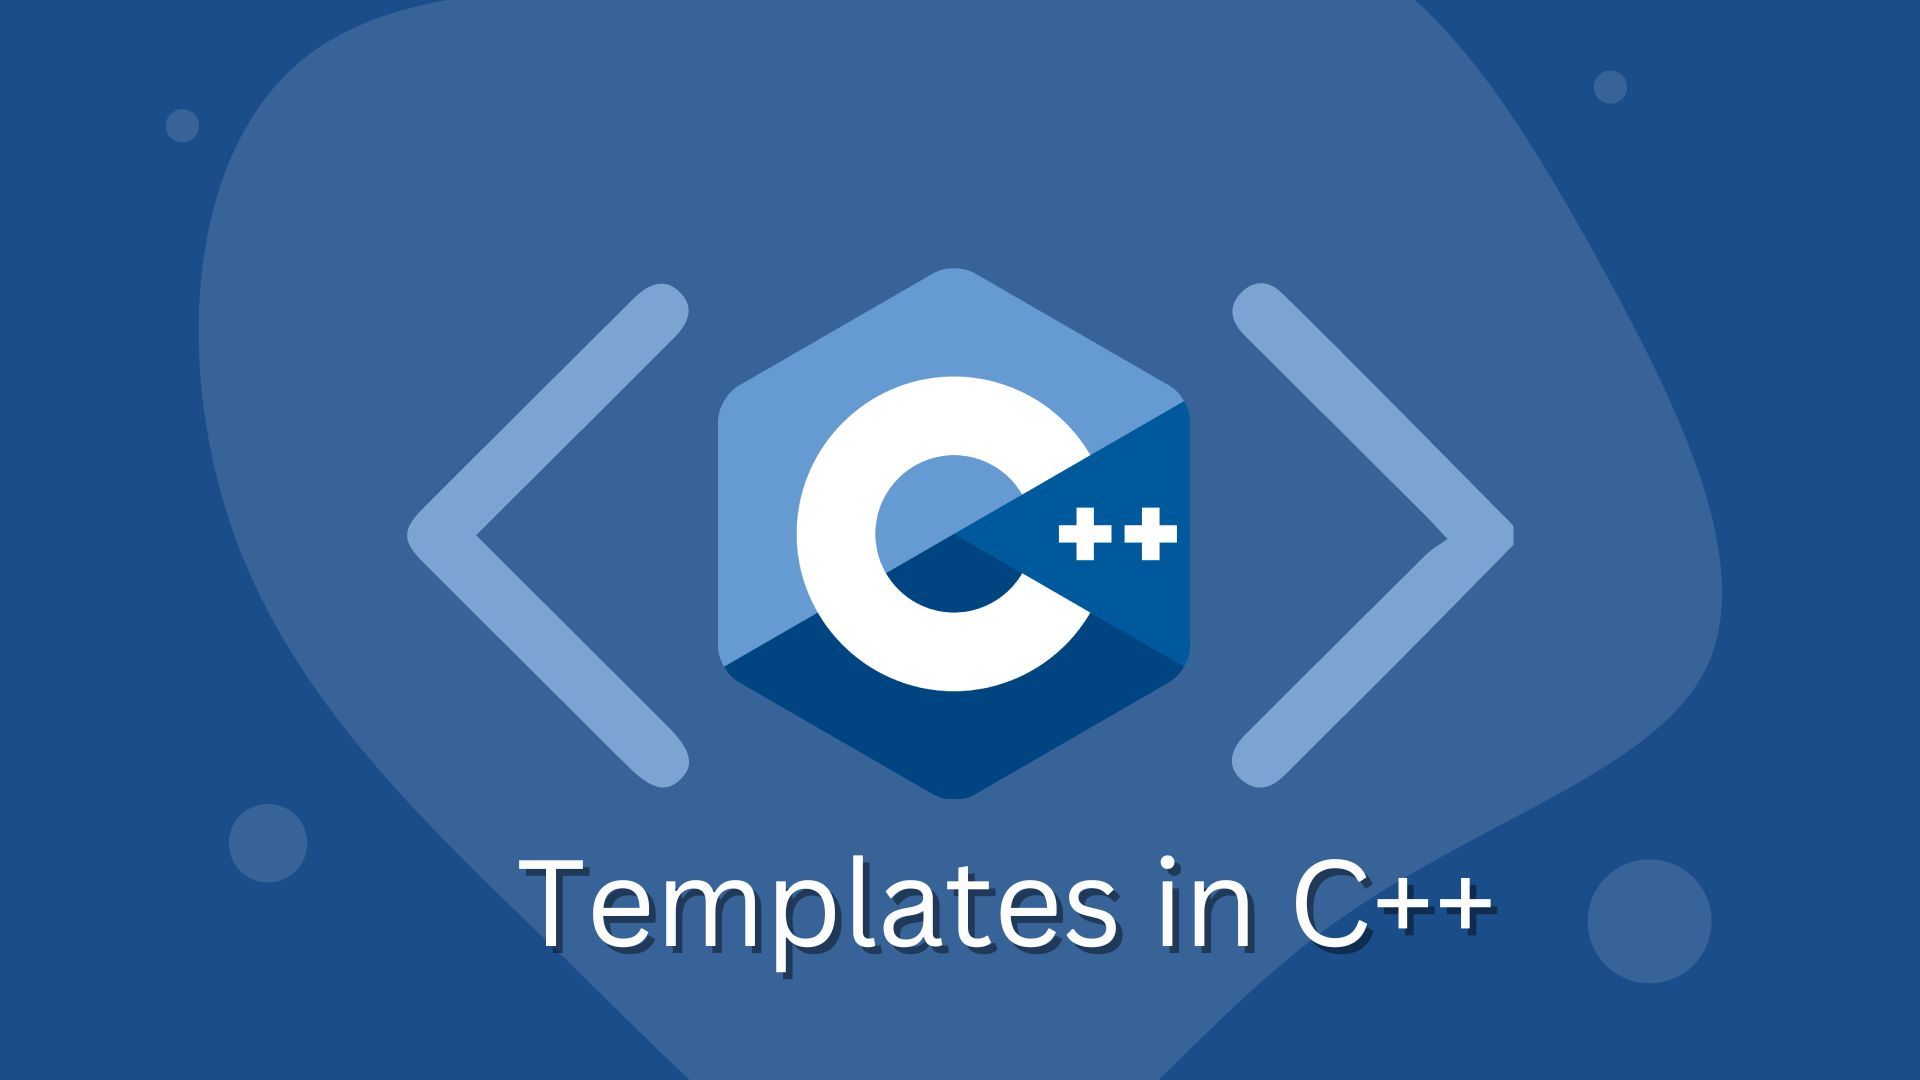 Understanding Templates in C++